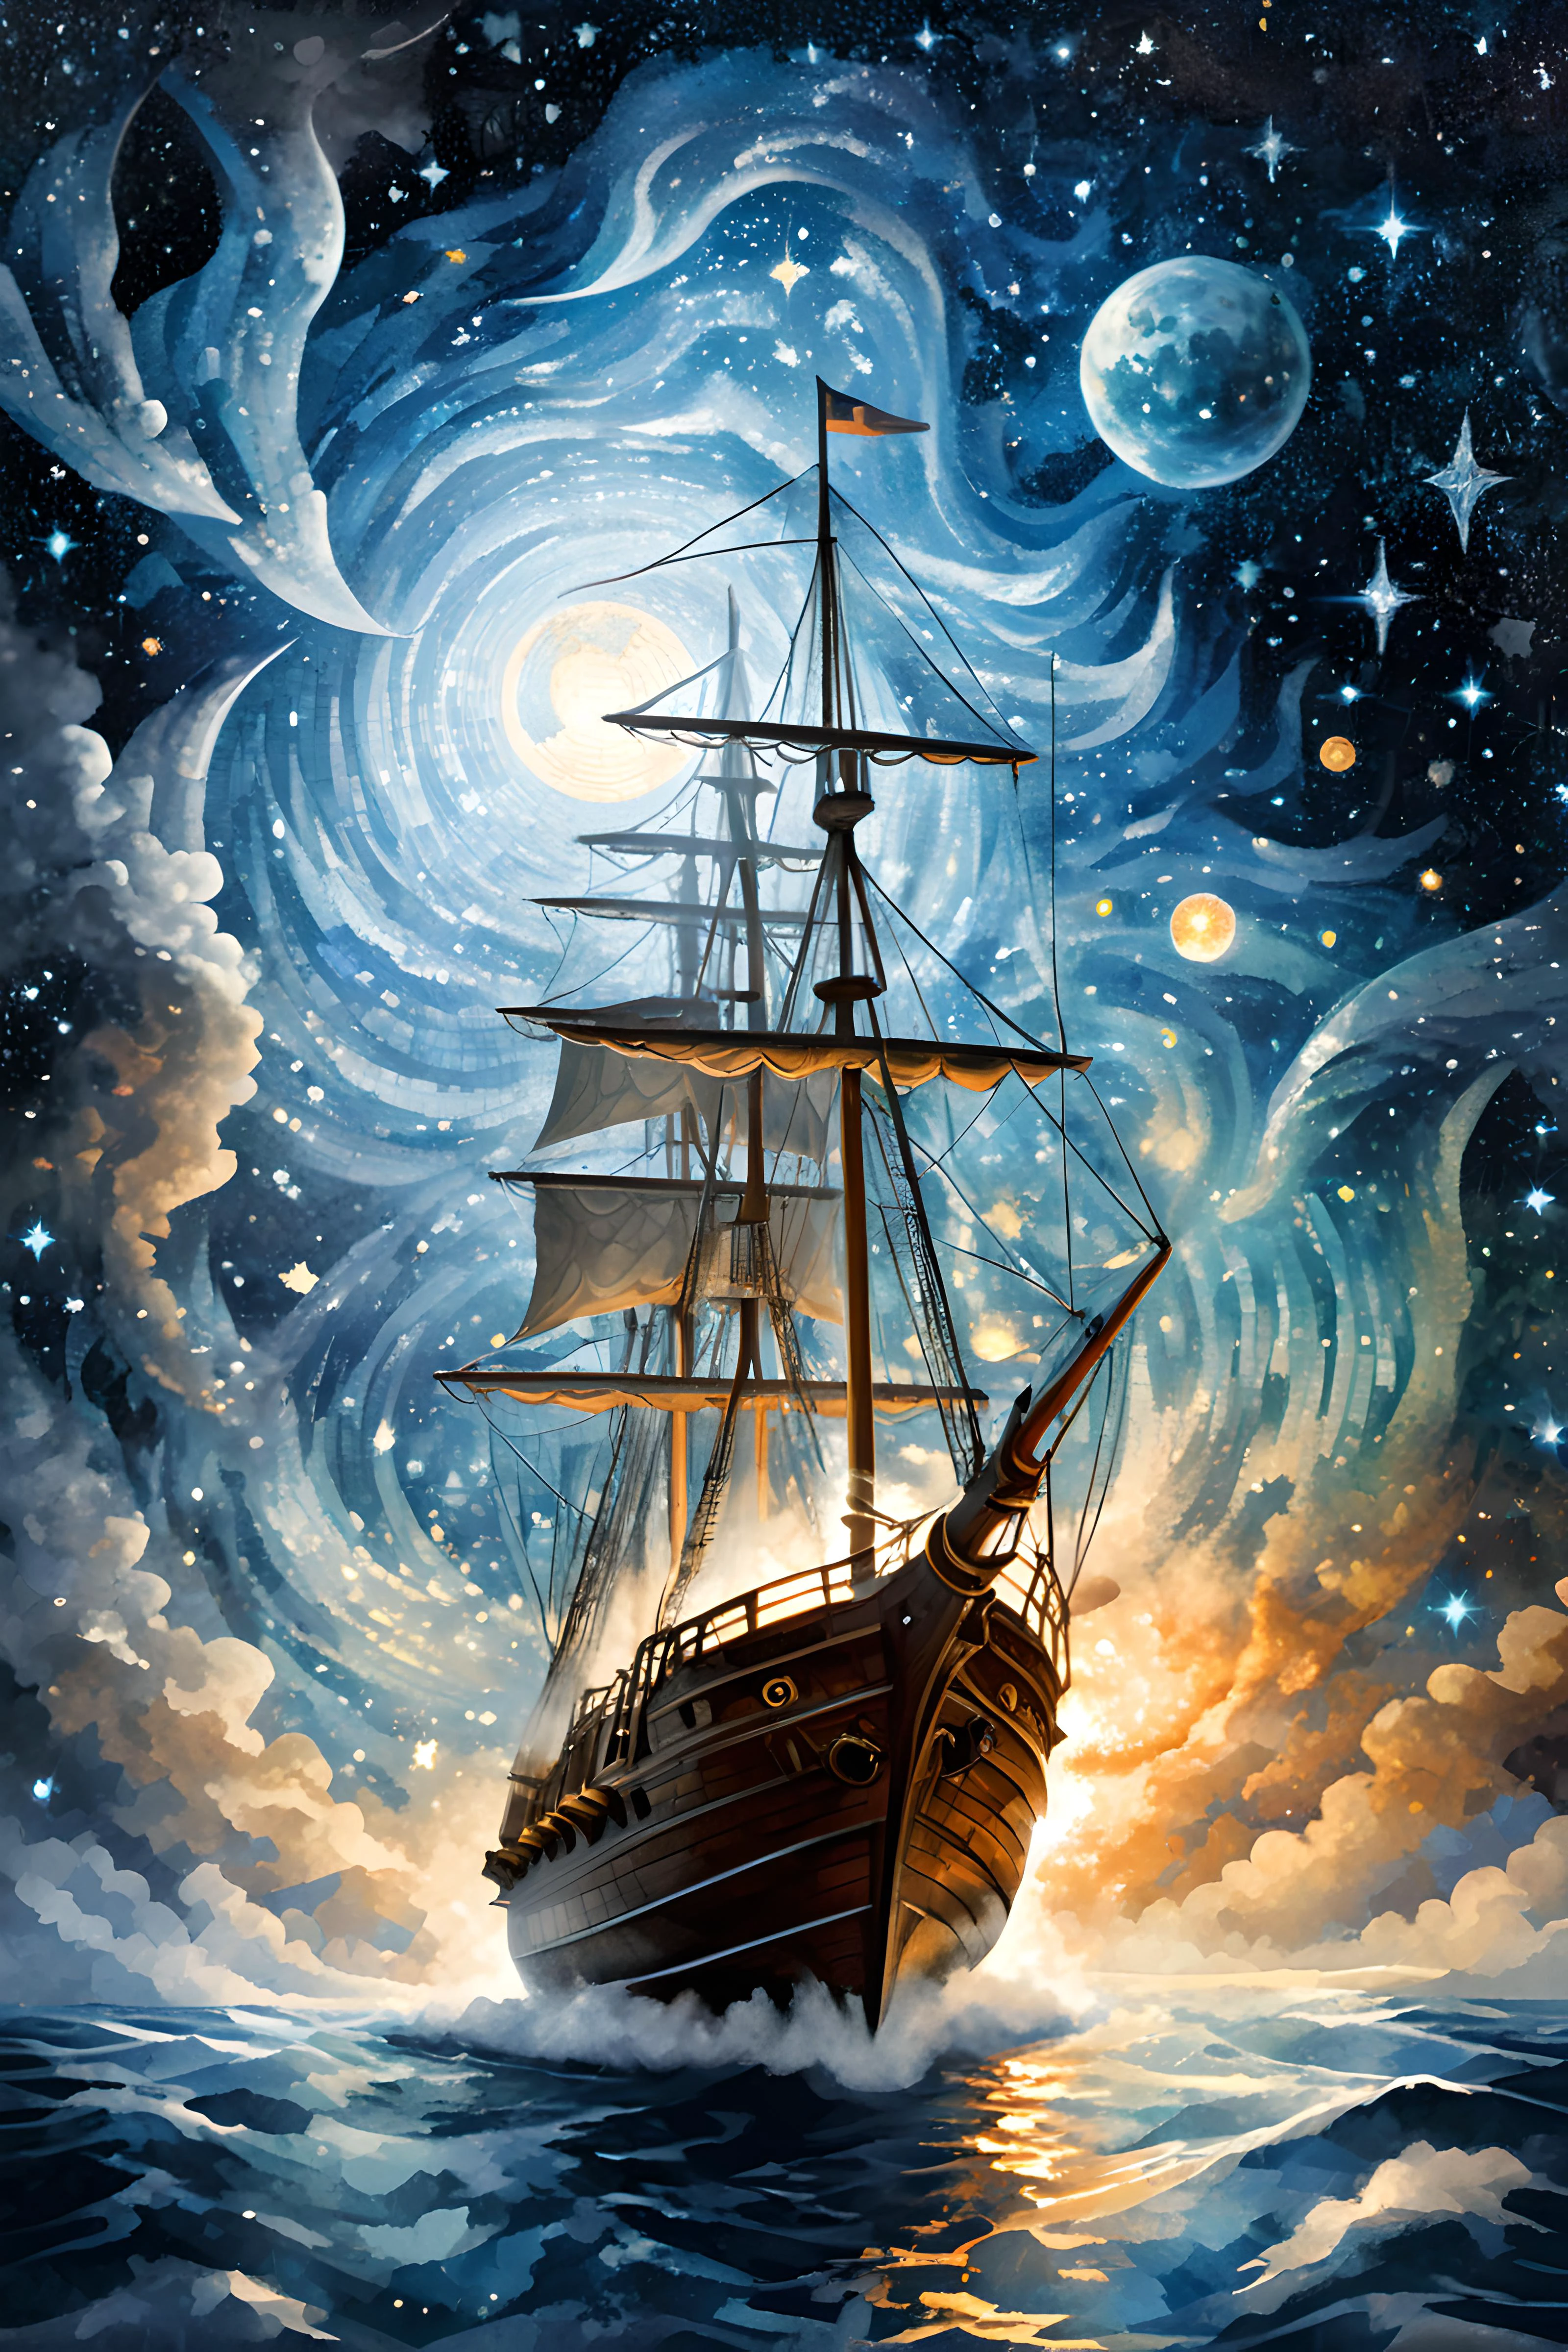 (Digital 馬賽克 art:2),馬賽克 Tile Art,馬賽克,
神奇的飛行探險家乘坐天空中的神奇帆船接近昴宿星團,什麼會,反重力,高空飛行,夜空,宇宙, 